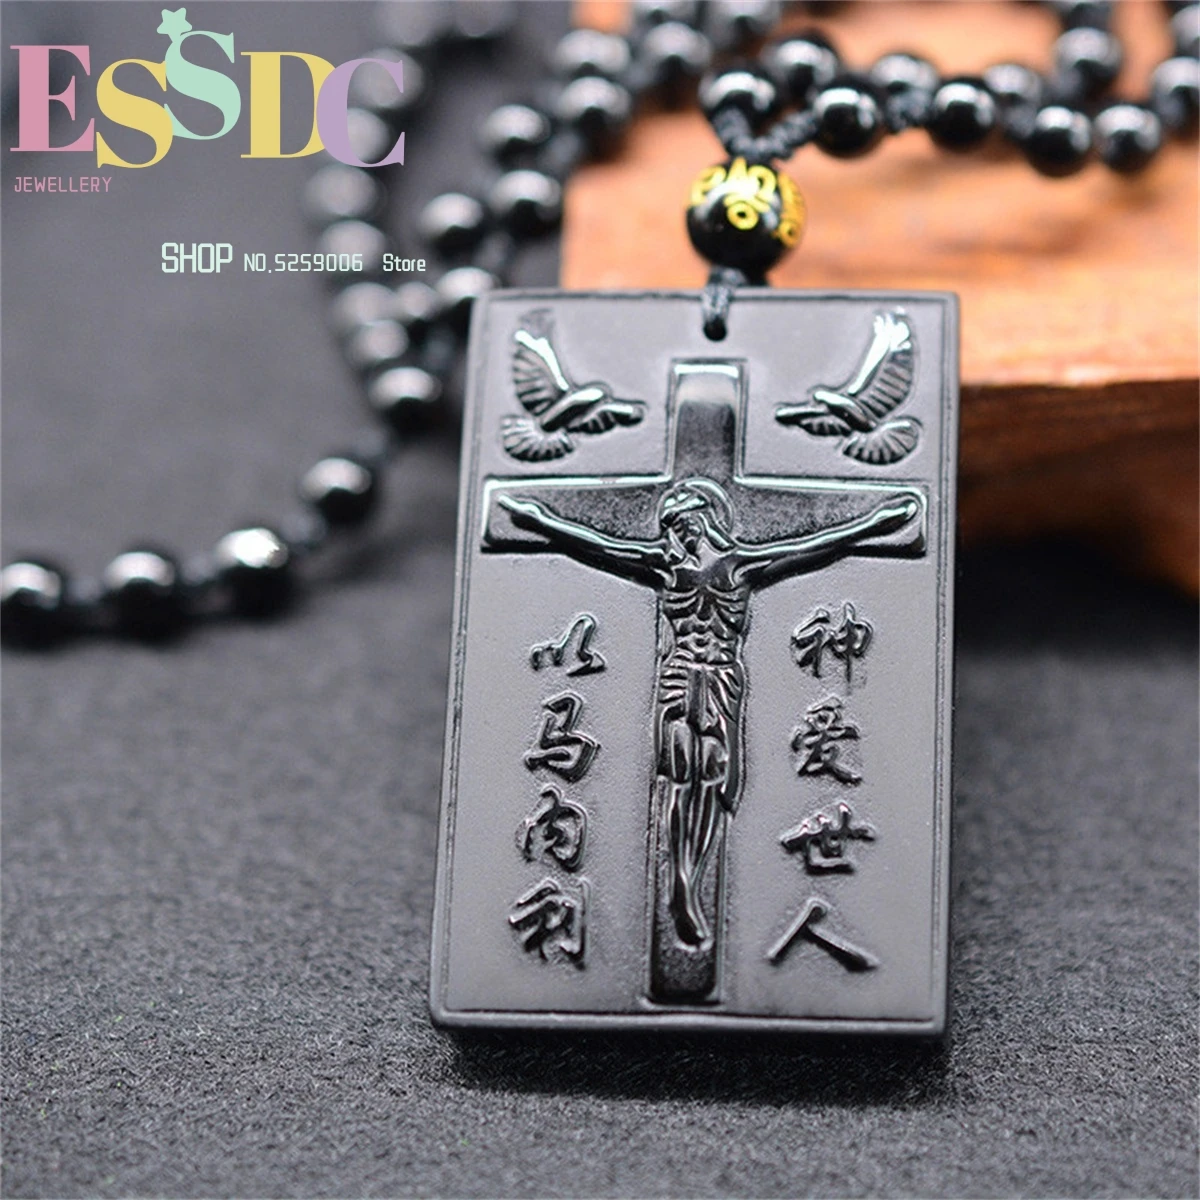 

Натуральный китайский обсидиан, черная ручная резьба, подвеска-крест, модная бутиковая бижутерия для мужчин и женщин, ожерелье с крестом Иисуса, популярный подарок